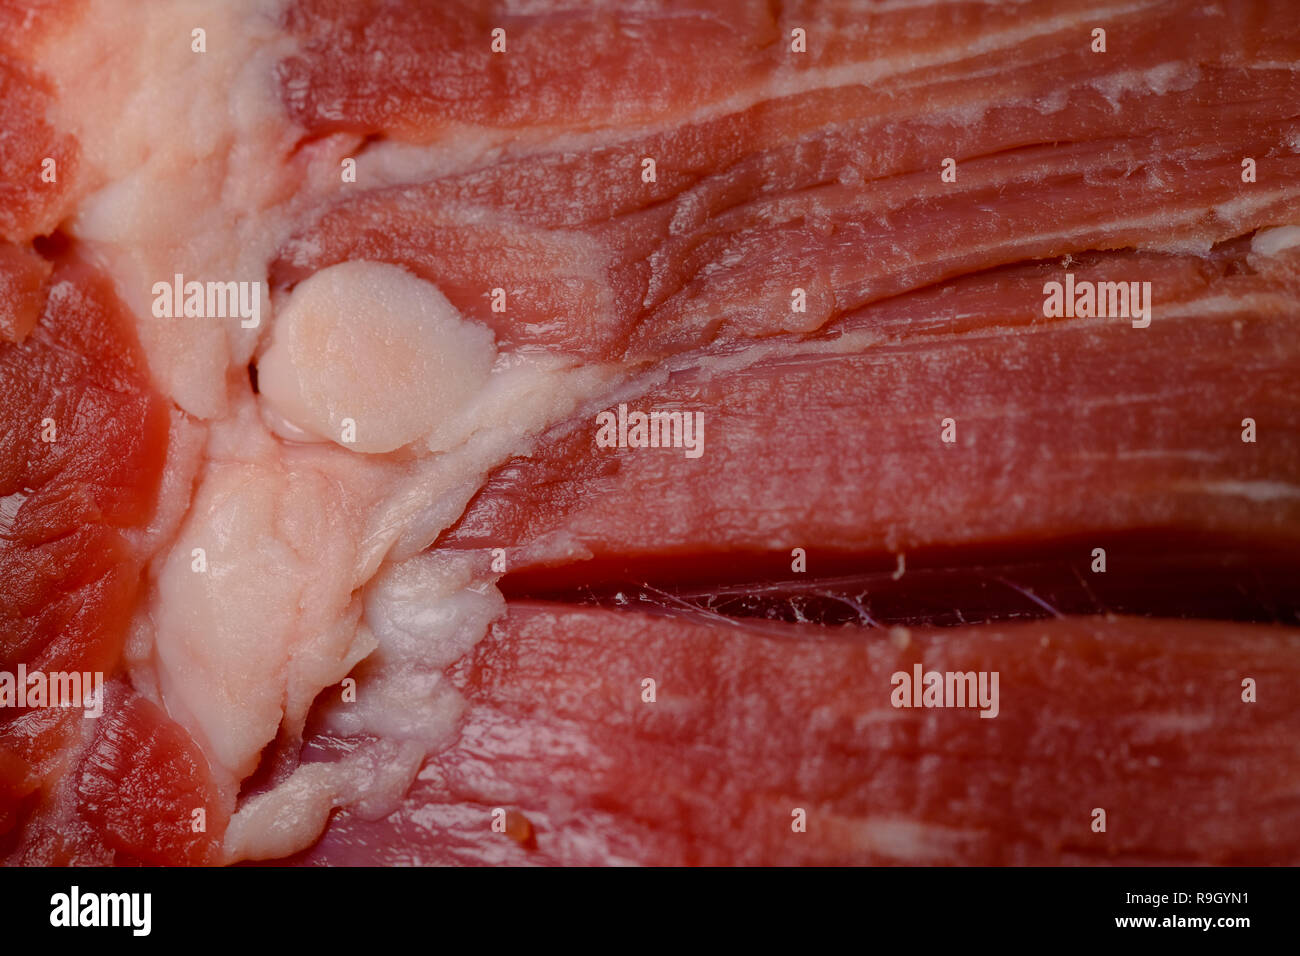 Red raw di carne di manzo con frammento di grasso bianco, macro close up, la cottura e il concetto di nutrizione Foto Stock